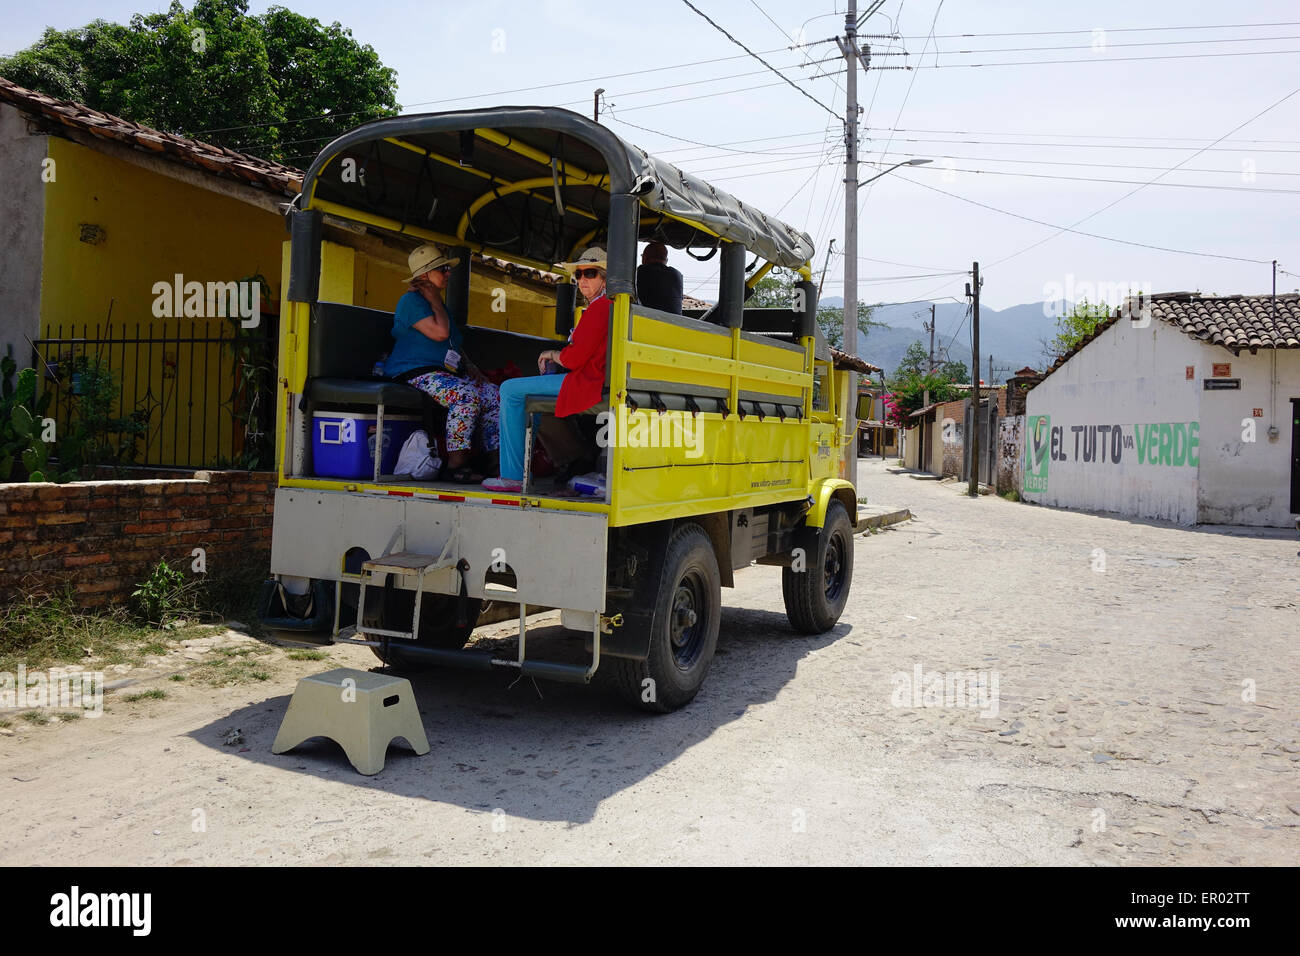 Vallarta Adventures véhicule à El Tuito. Les visiteurs sont dans une tournée intitulée "Mexico" cachés Banque D'Images